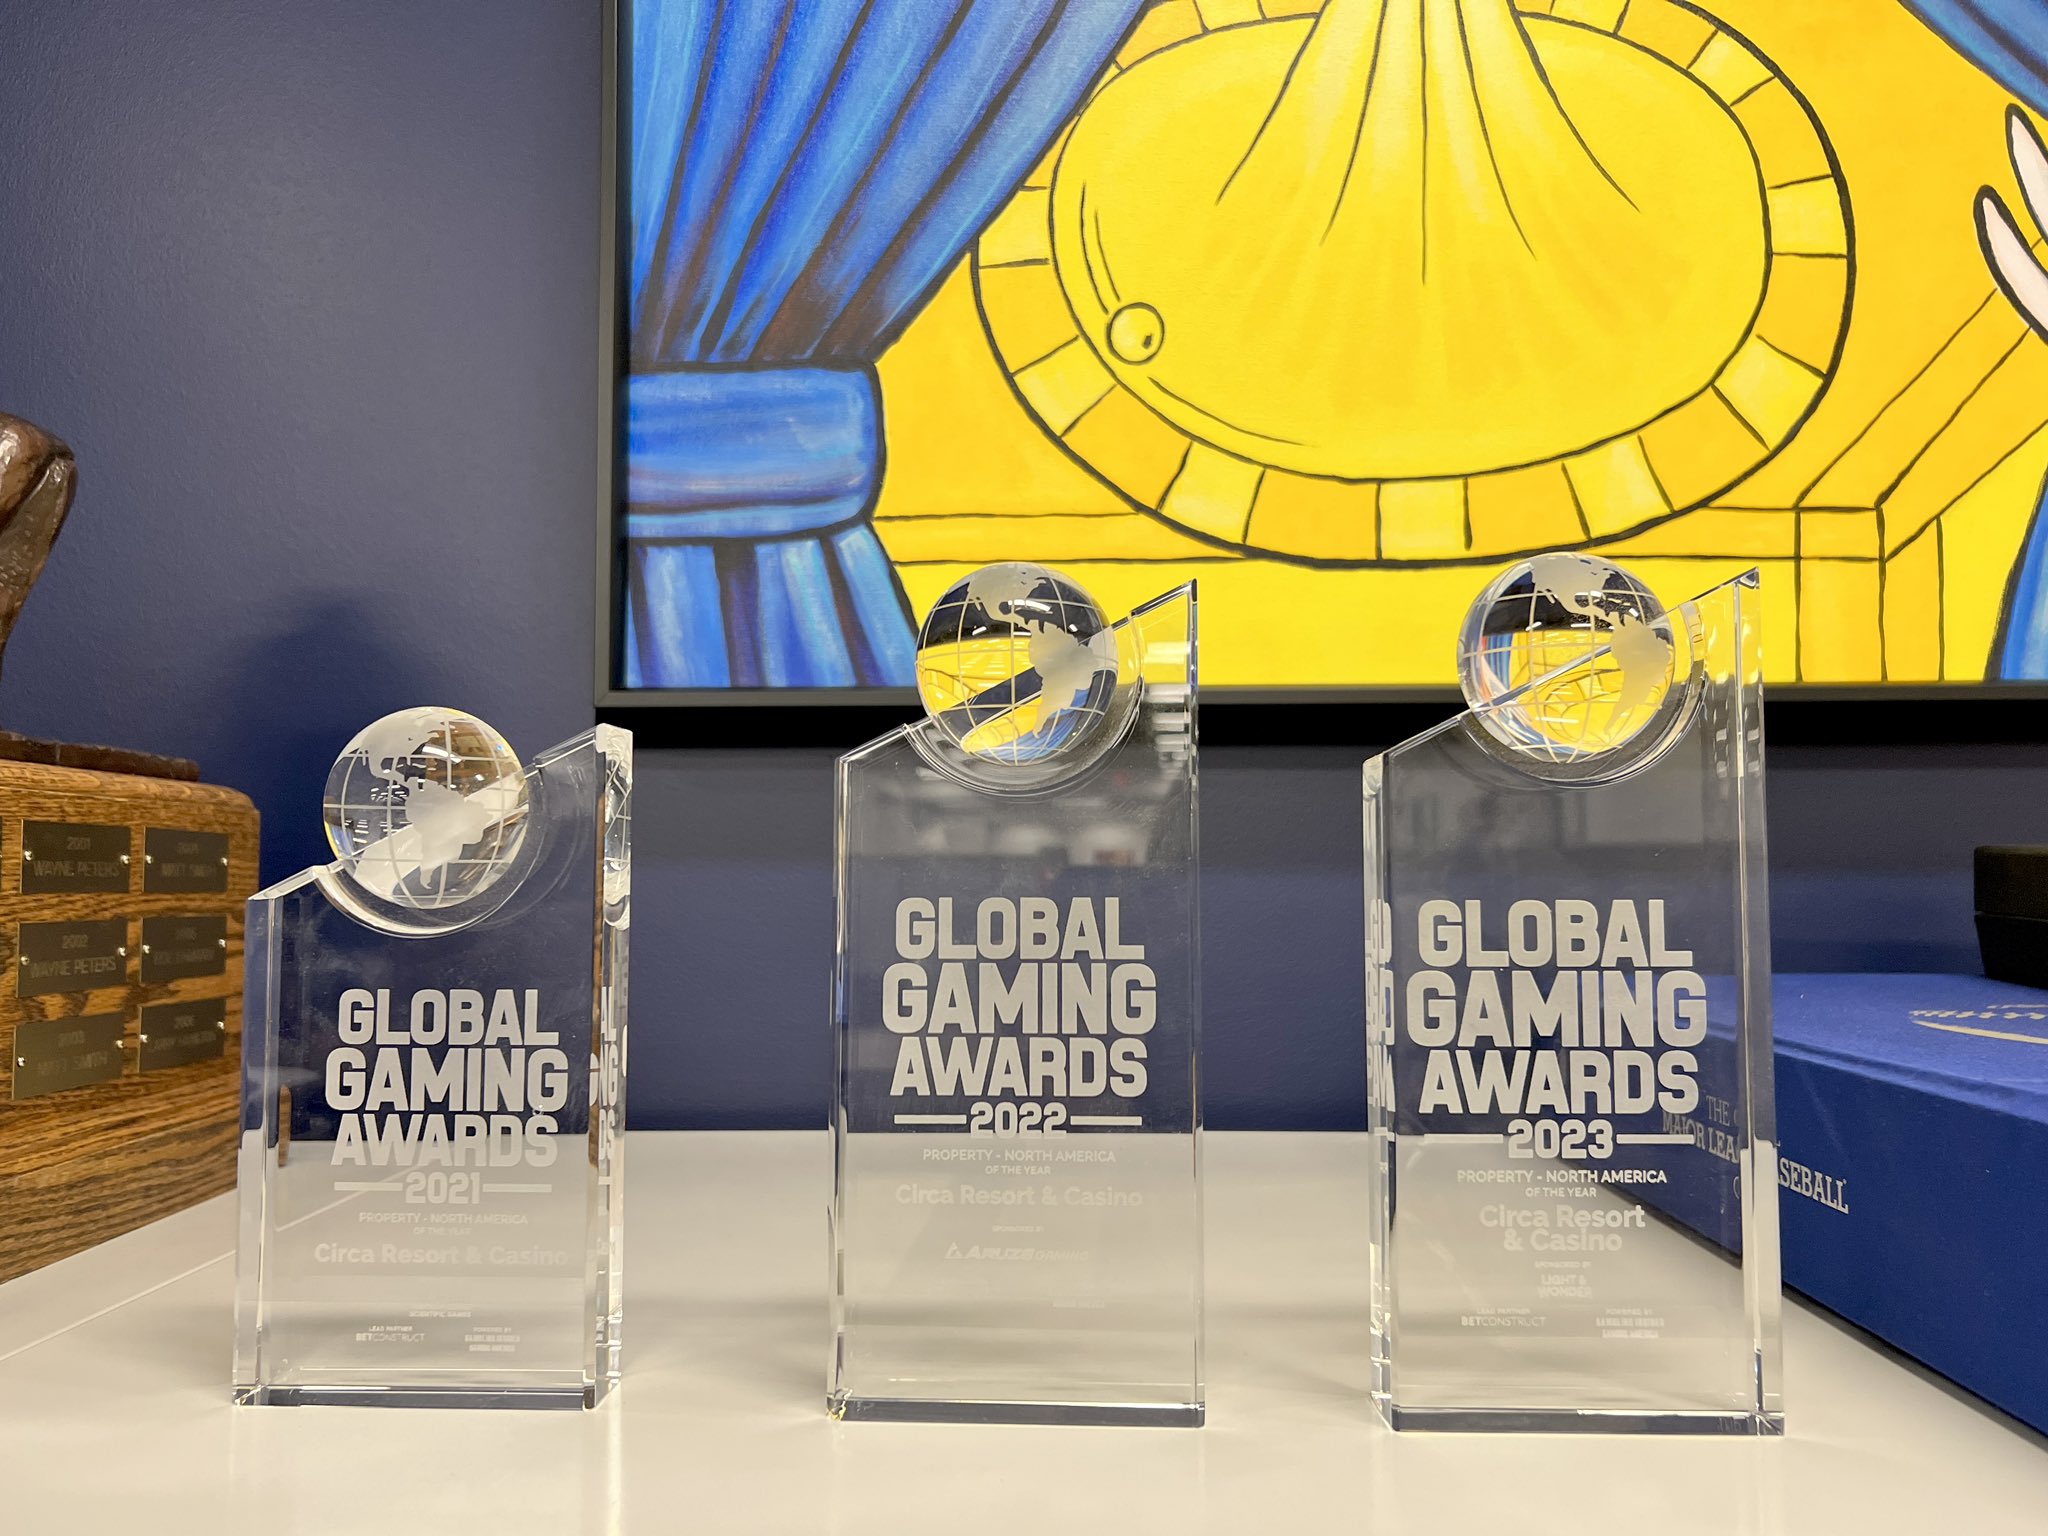 Global Gaming Awards - Las Vegas 2022